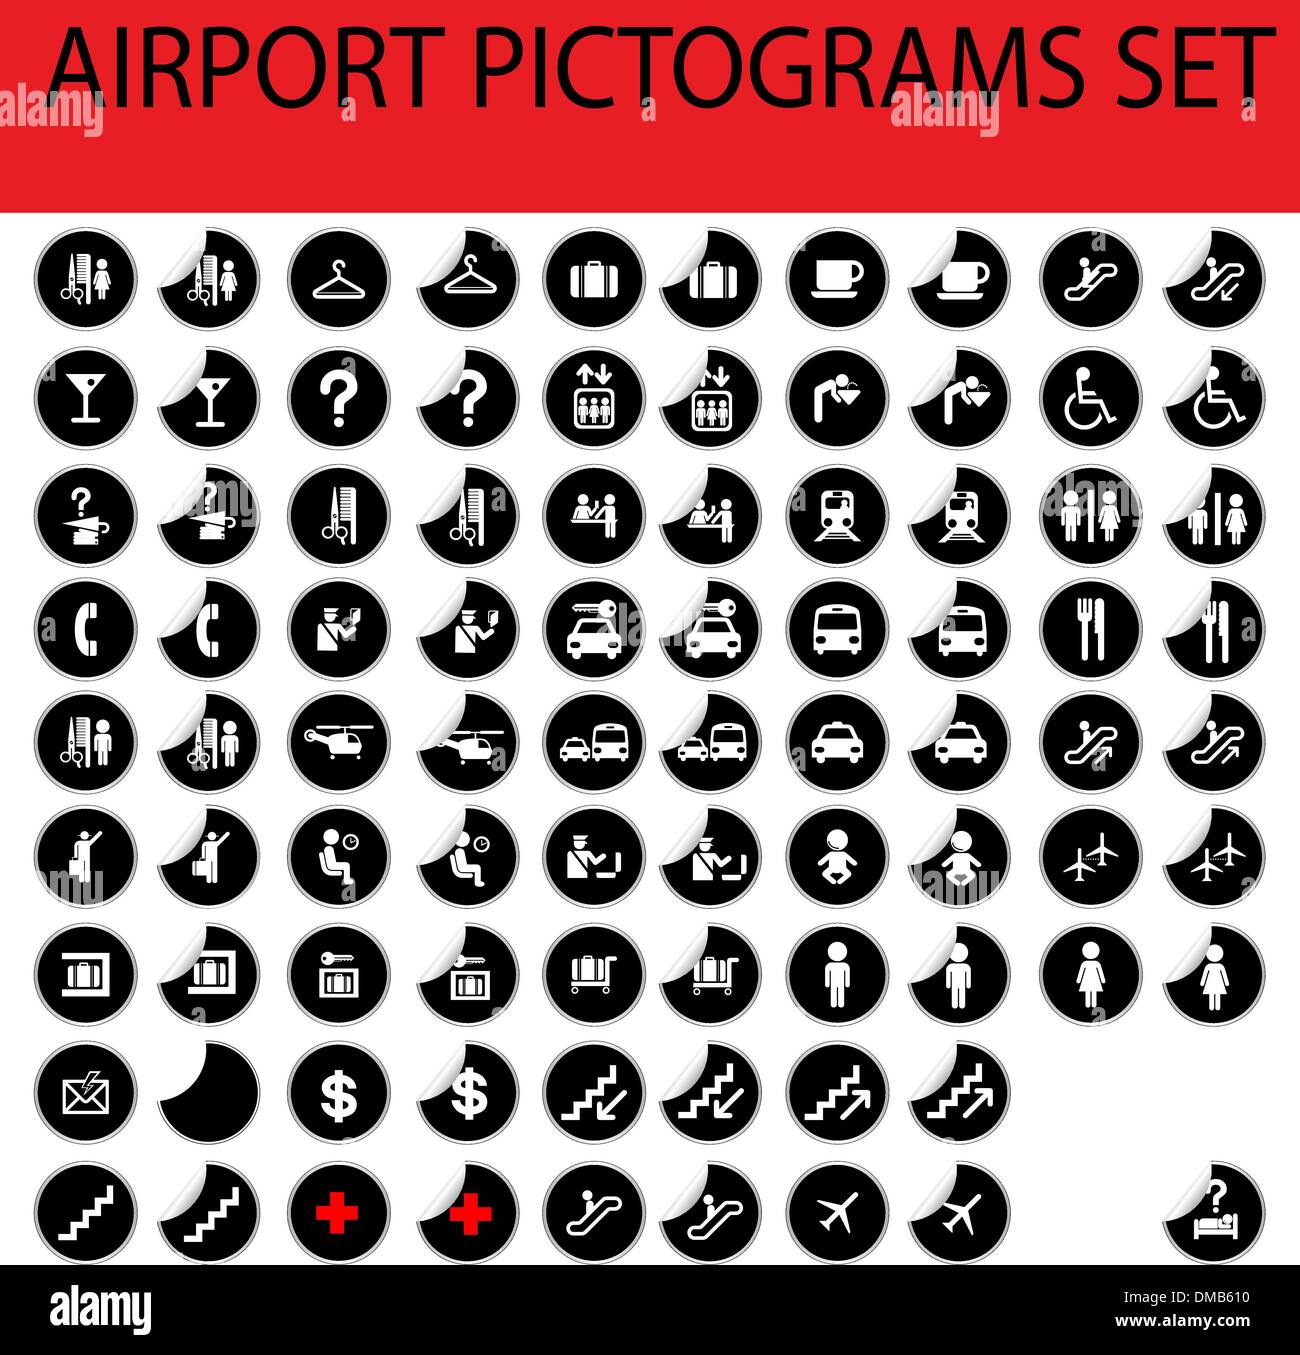 Flughafen-Piktogramme-set Stock Vektor